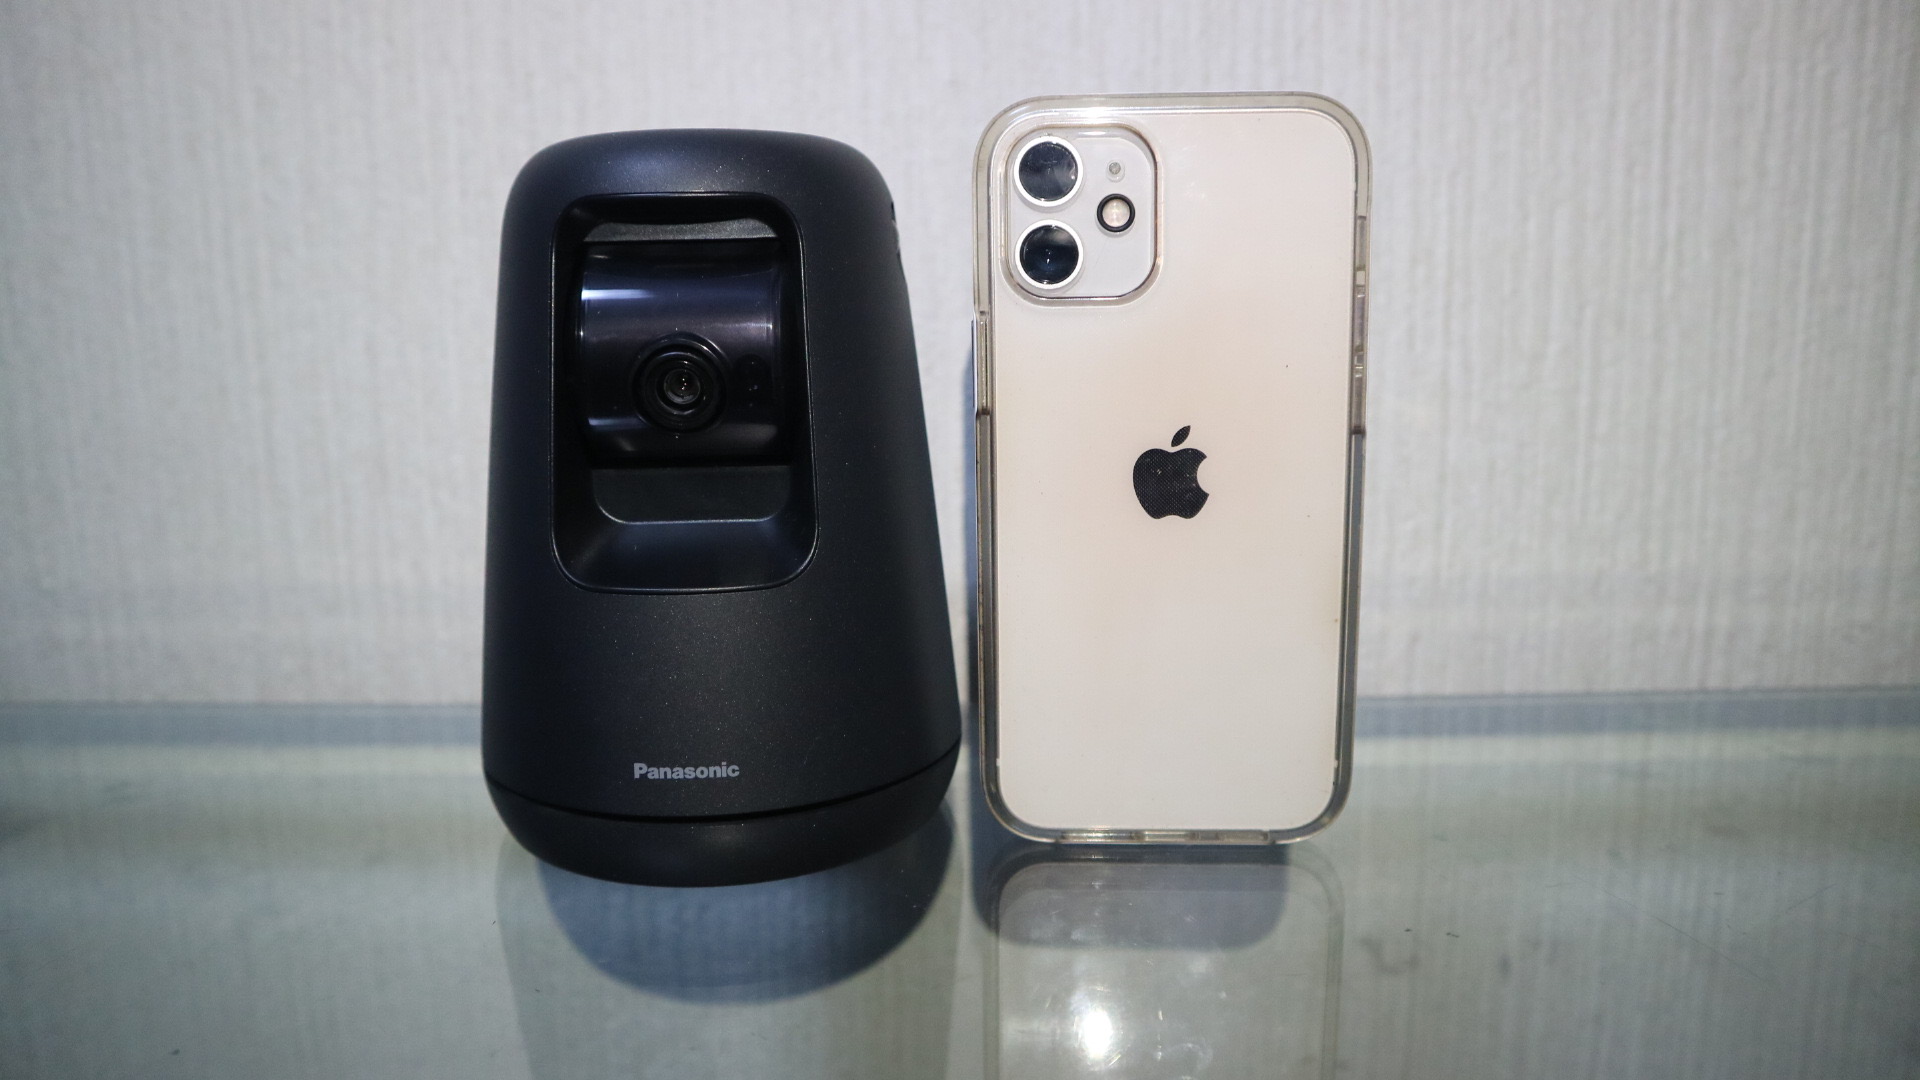 パナソニック・ペットカメラとiphone12miniの比較画像